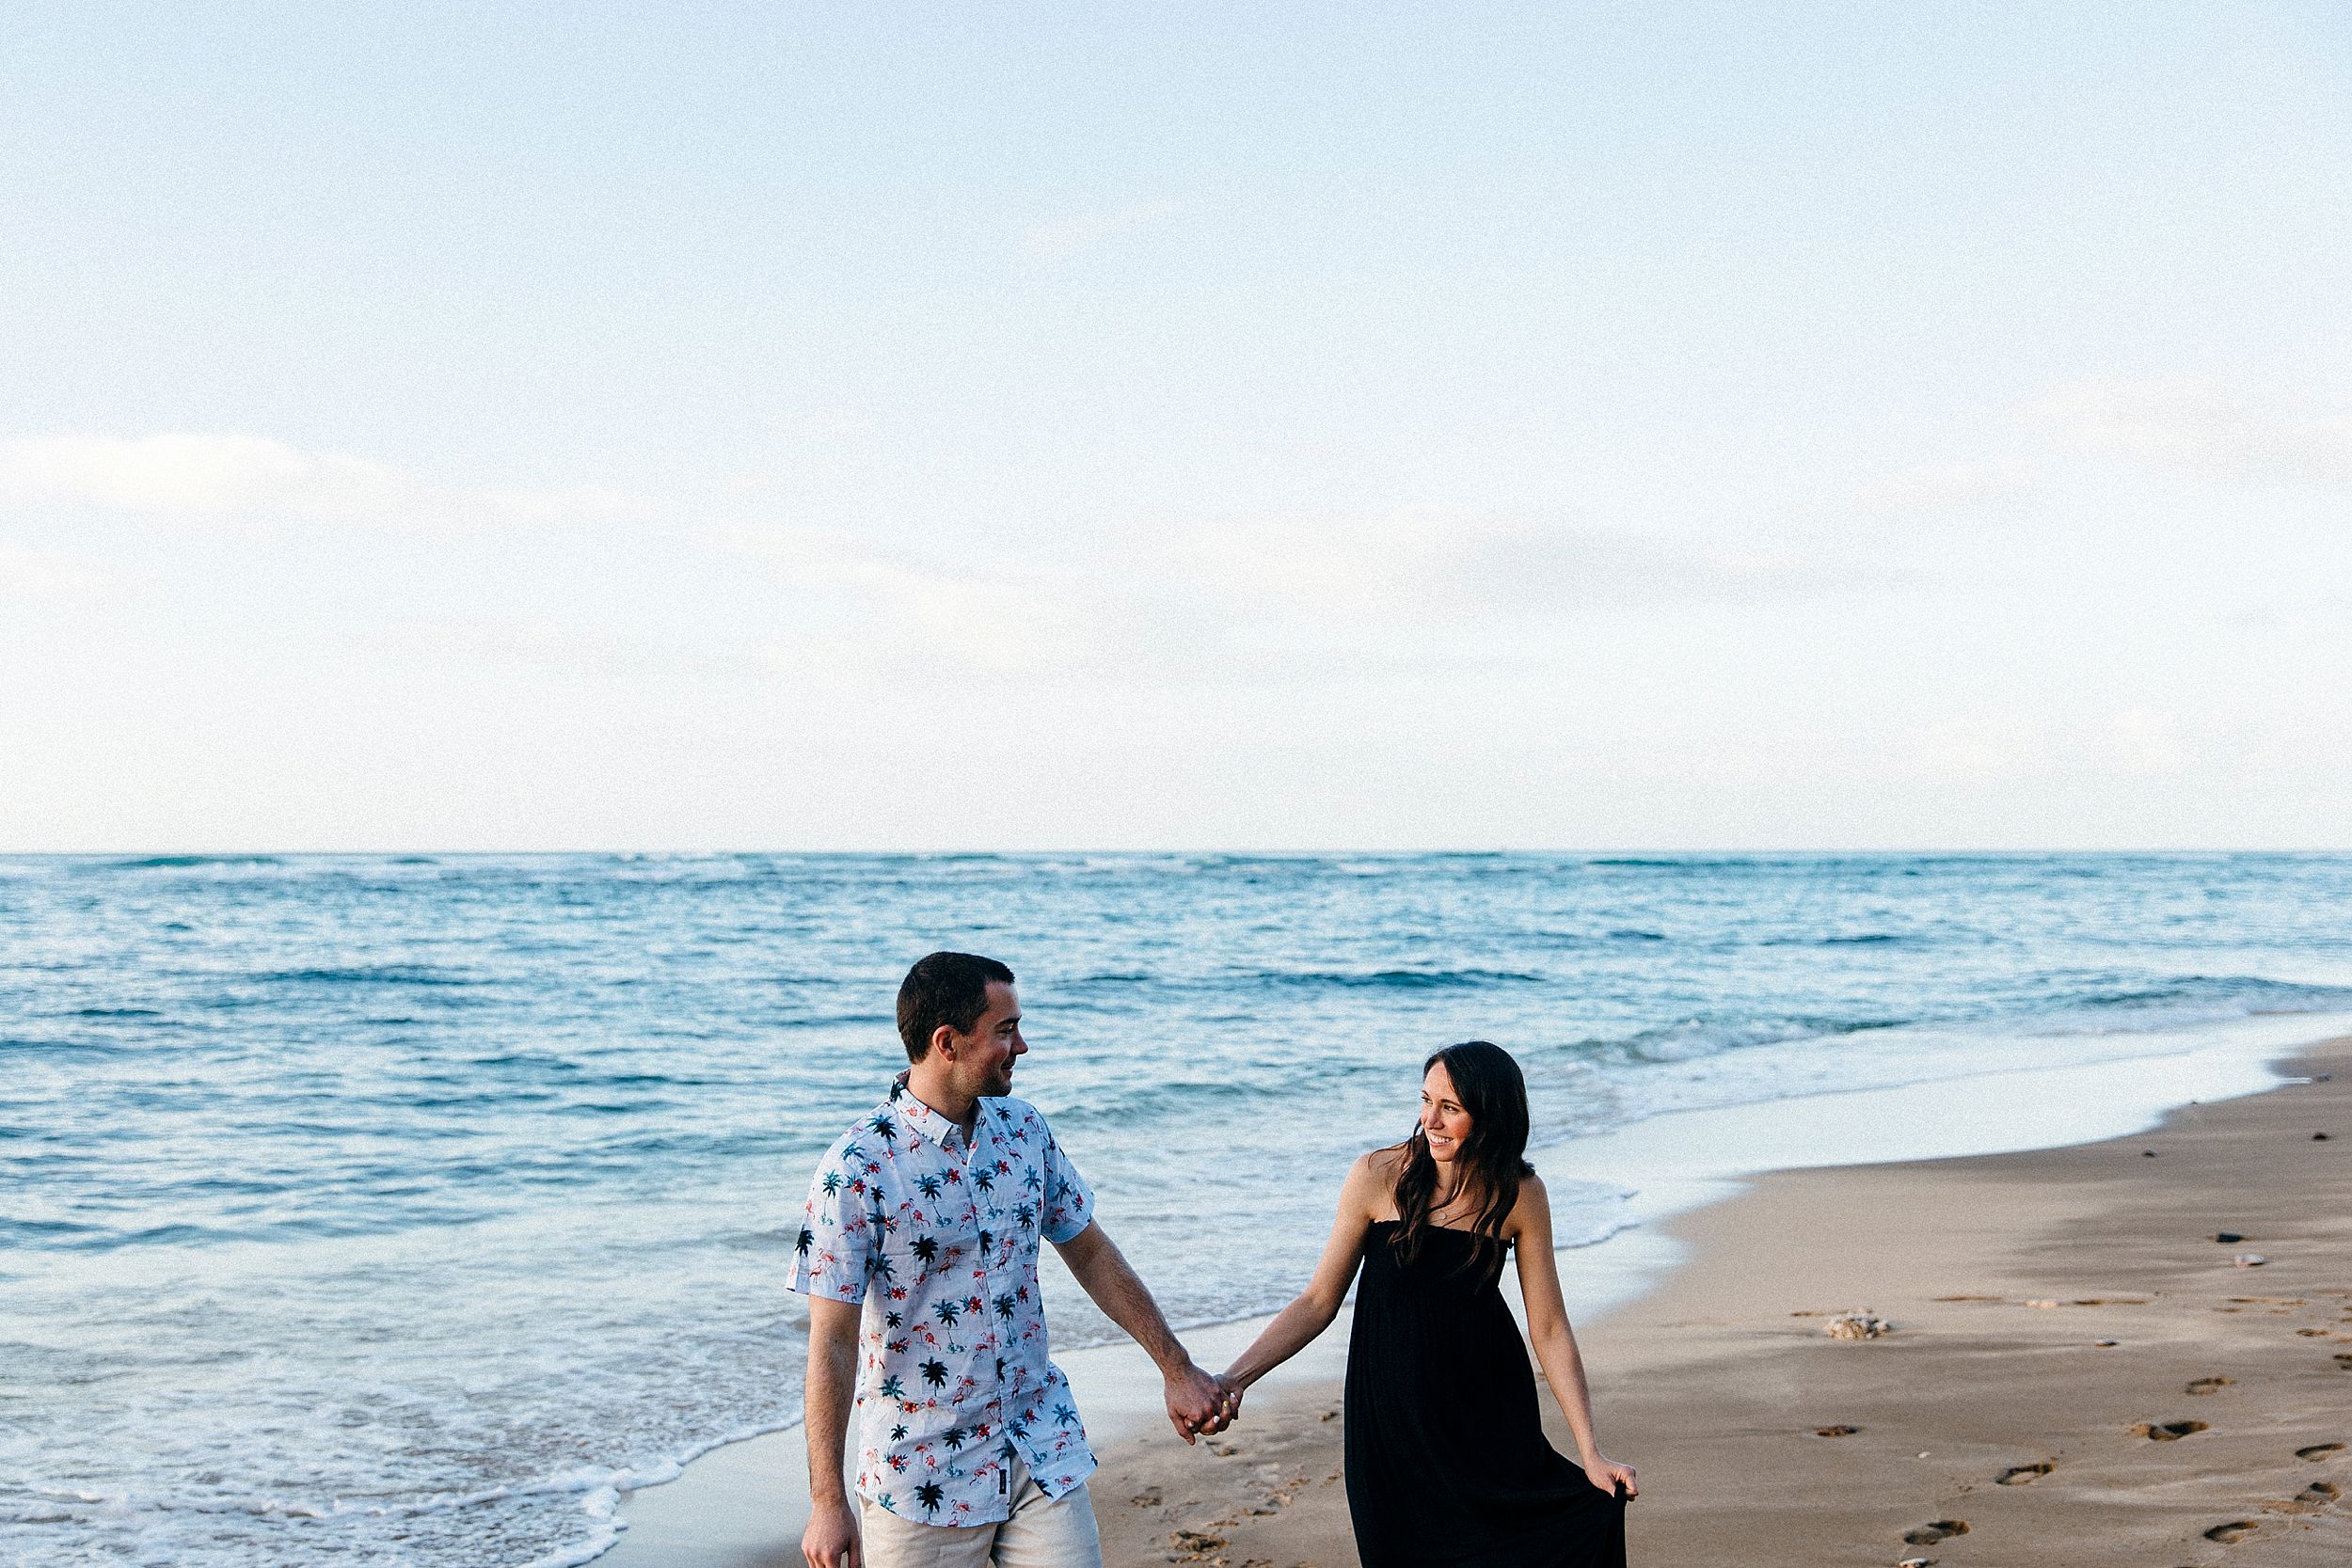 Honeymoon beach portraits in Hawaii